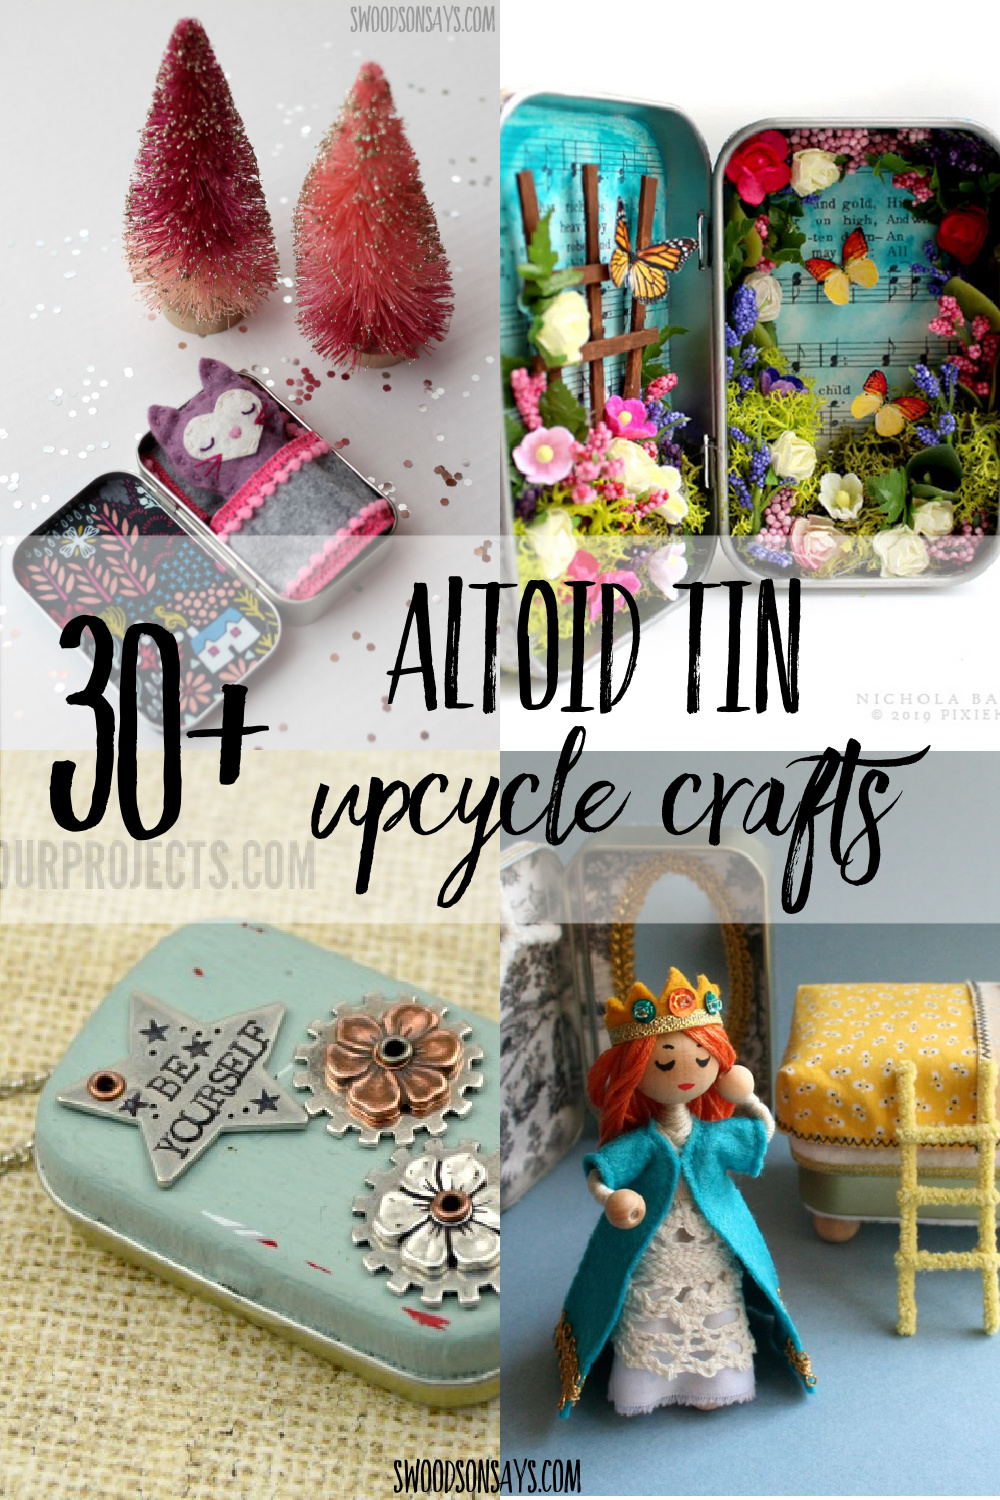 Tutorial: Altoids Tin Travel Embroidery Kit